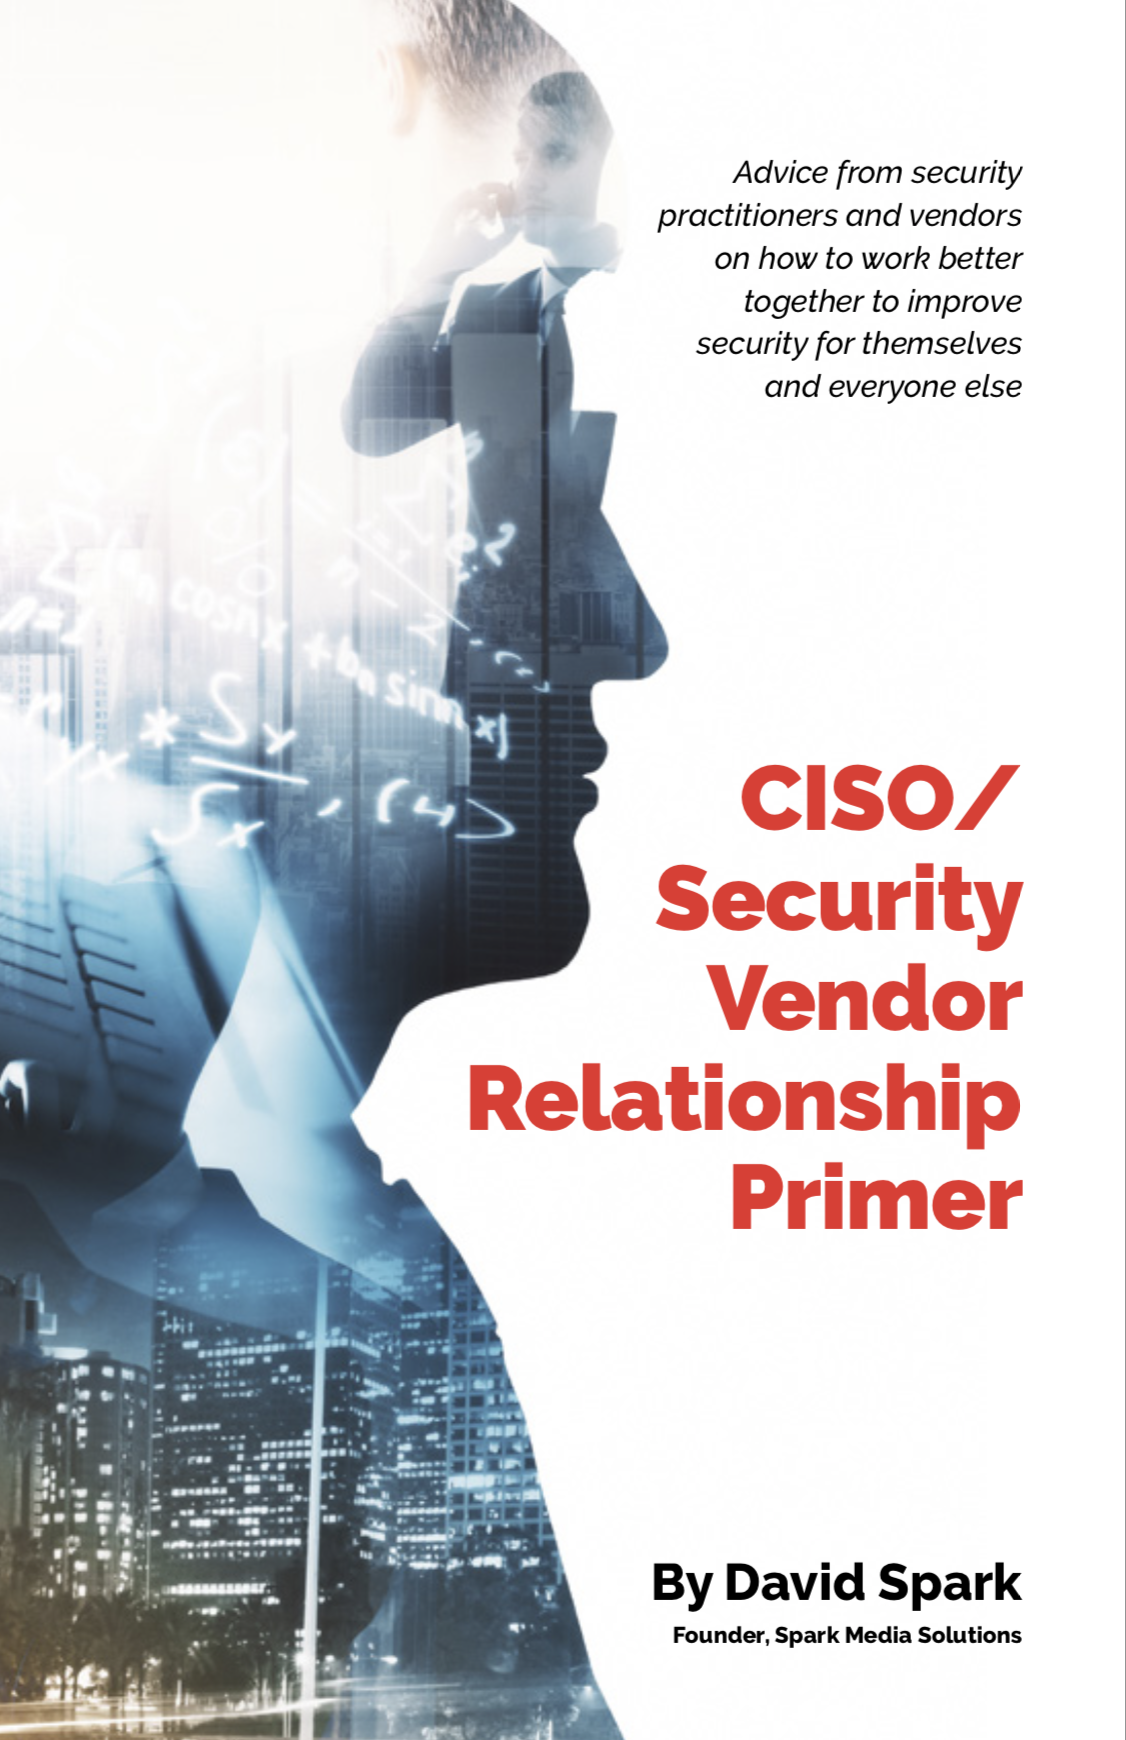 CISO Security vendor primer 